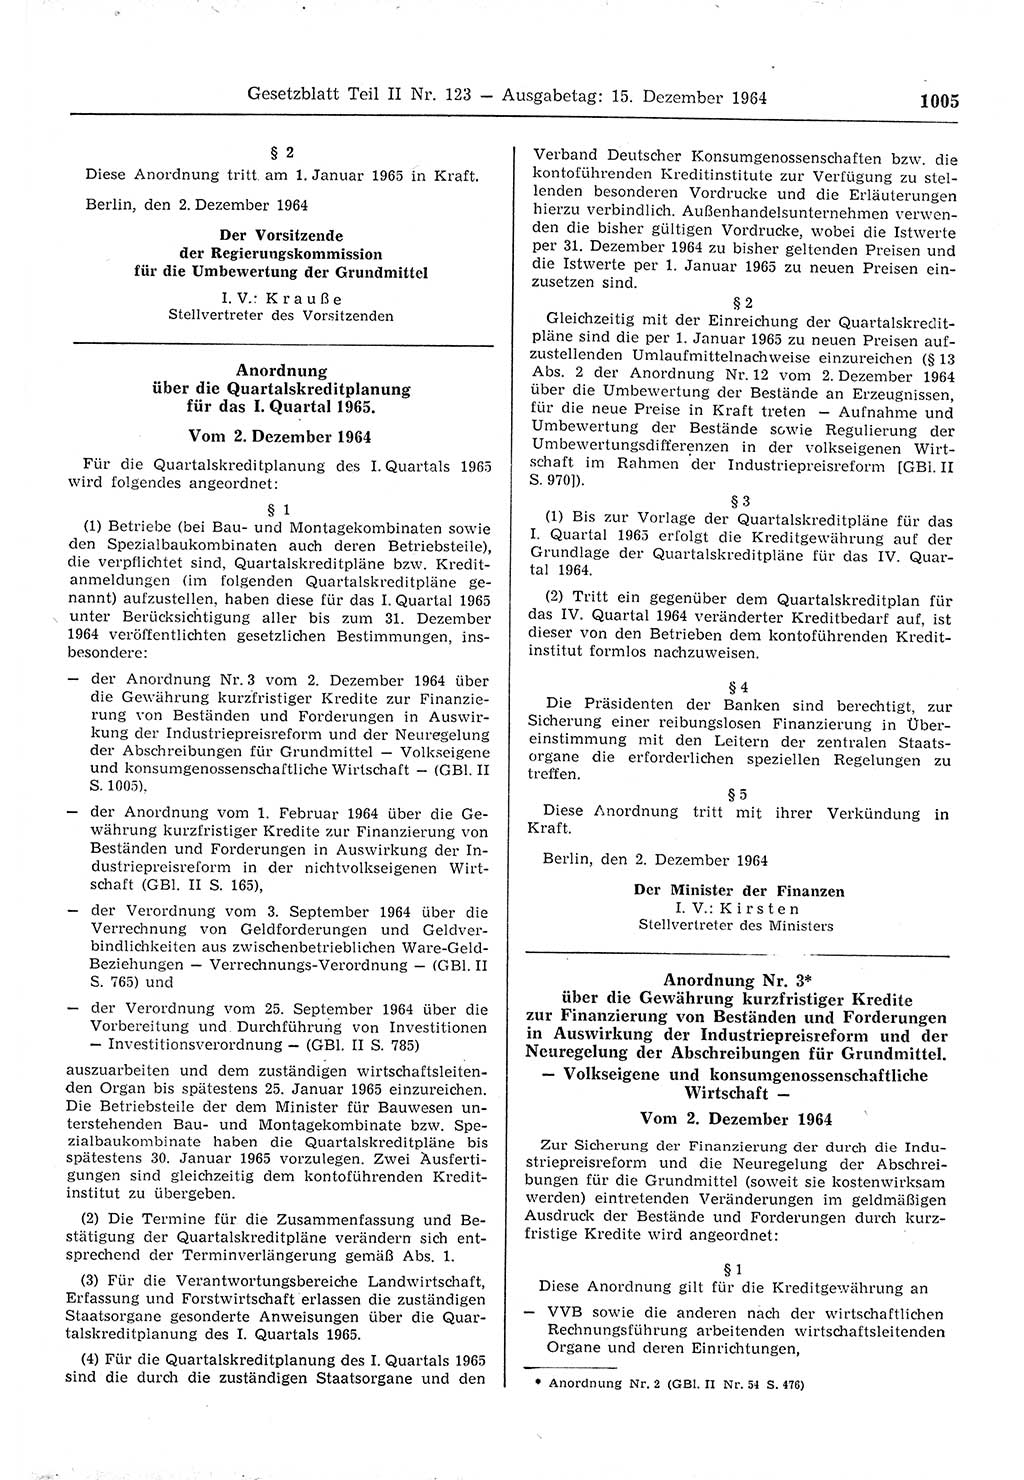 Gesetzblatt (GBl.) der Deutschen Demokratischen Republik (DDR) Teil ⅠⅠ 1964, Seite 1005 (GBl. DDR ⅠⅠ 1964, S. 1005)